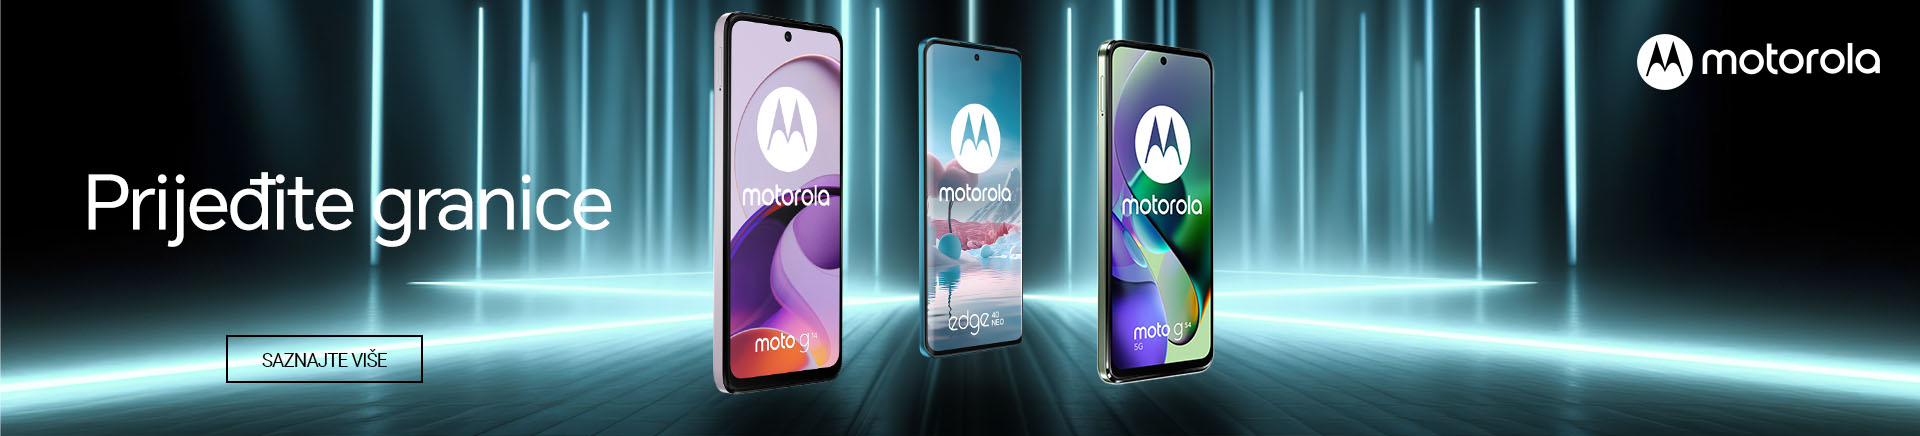 HR~Motorola prijedite granice MOBILE 760x872.jpg